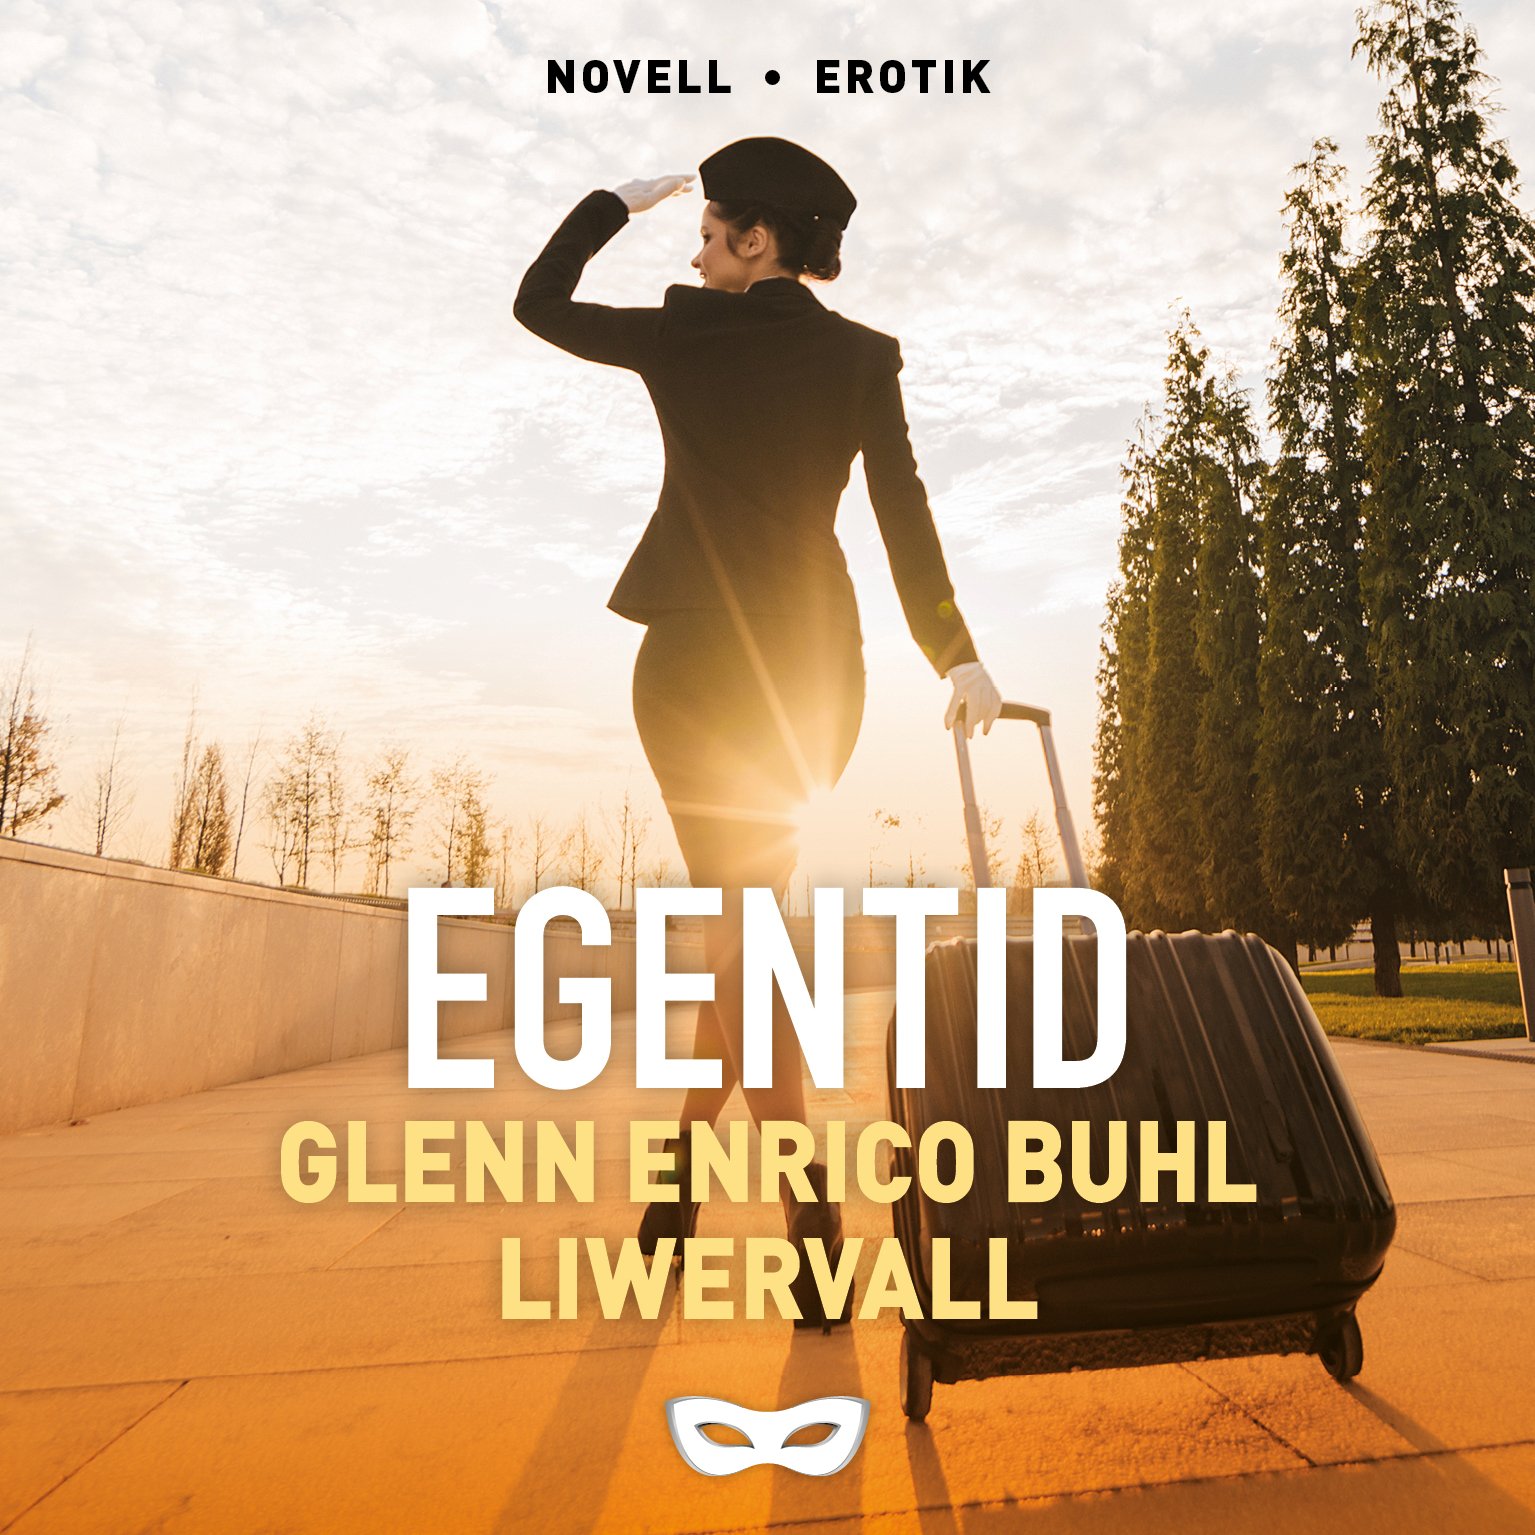 FRIRUM Glenn Enrico Buhl Liwervall Egentid omslag audio.jpg